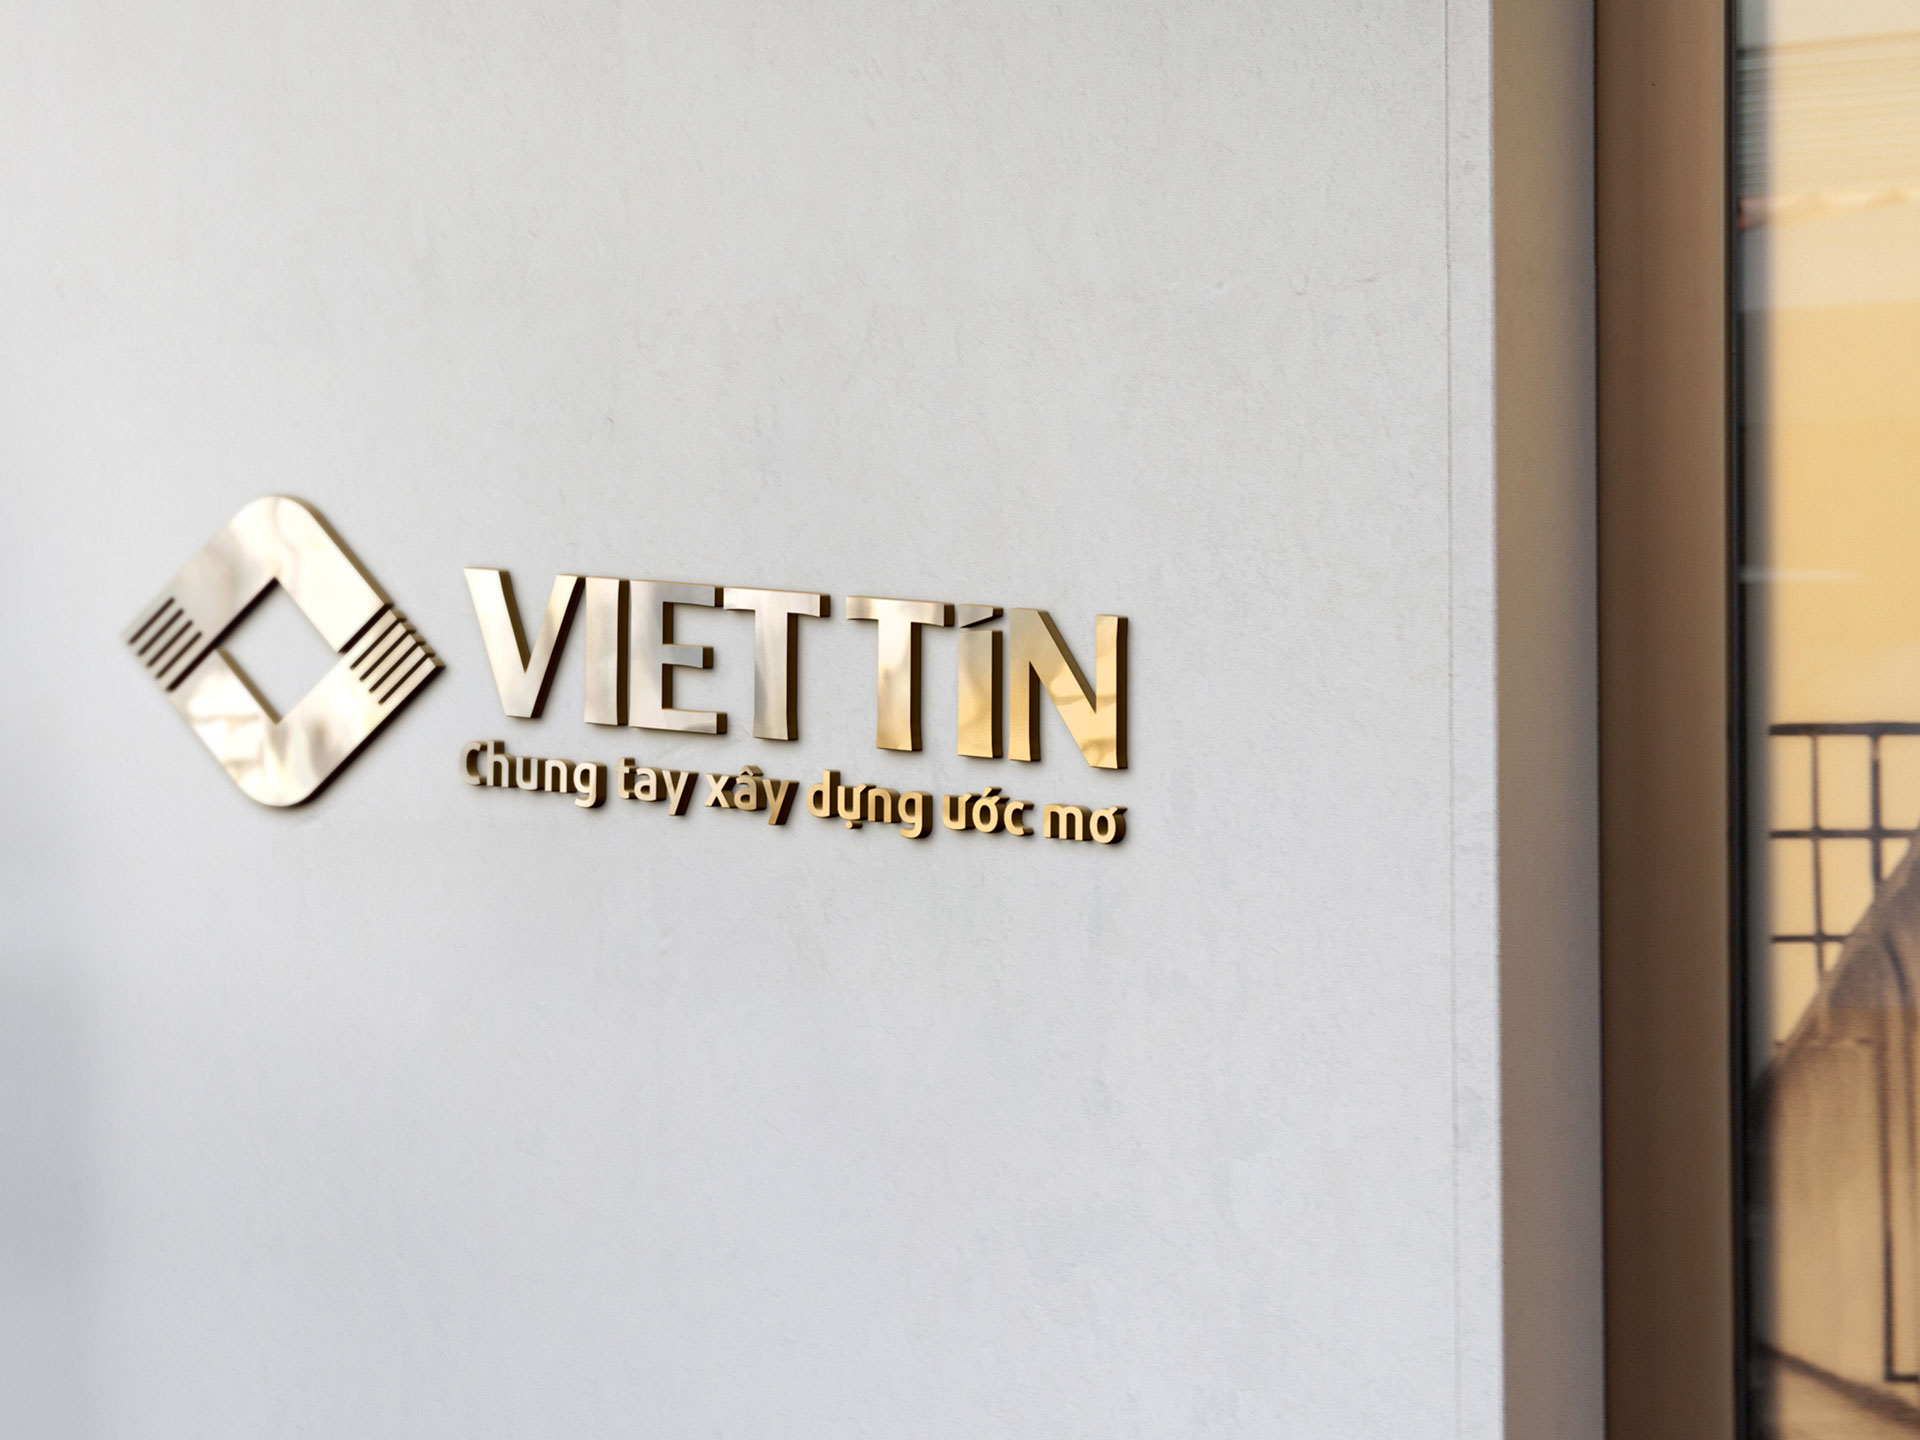 Thiết kế logo và bộ nhận diện thương hiệu công ty CPĐT Việt Tín tại Hà Nội